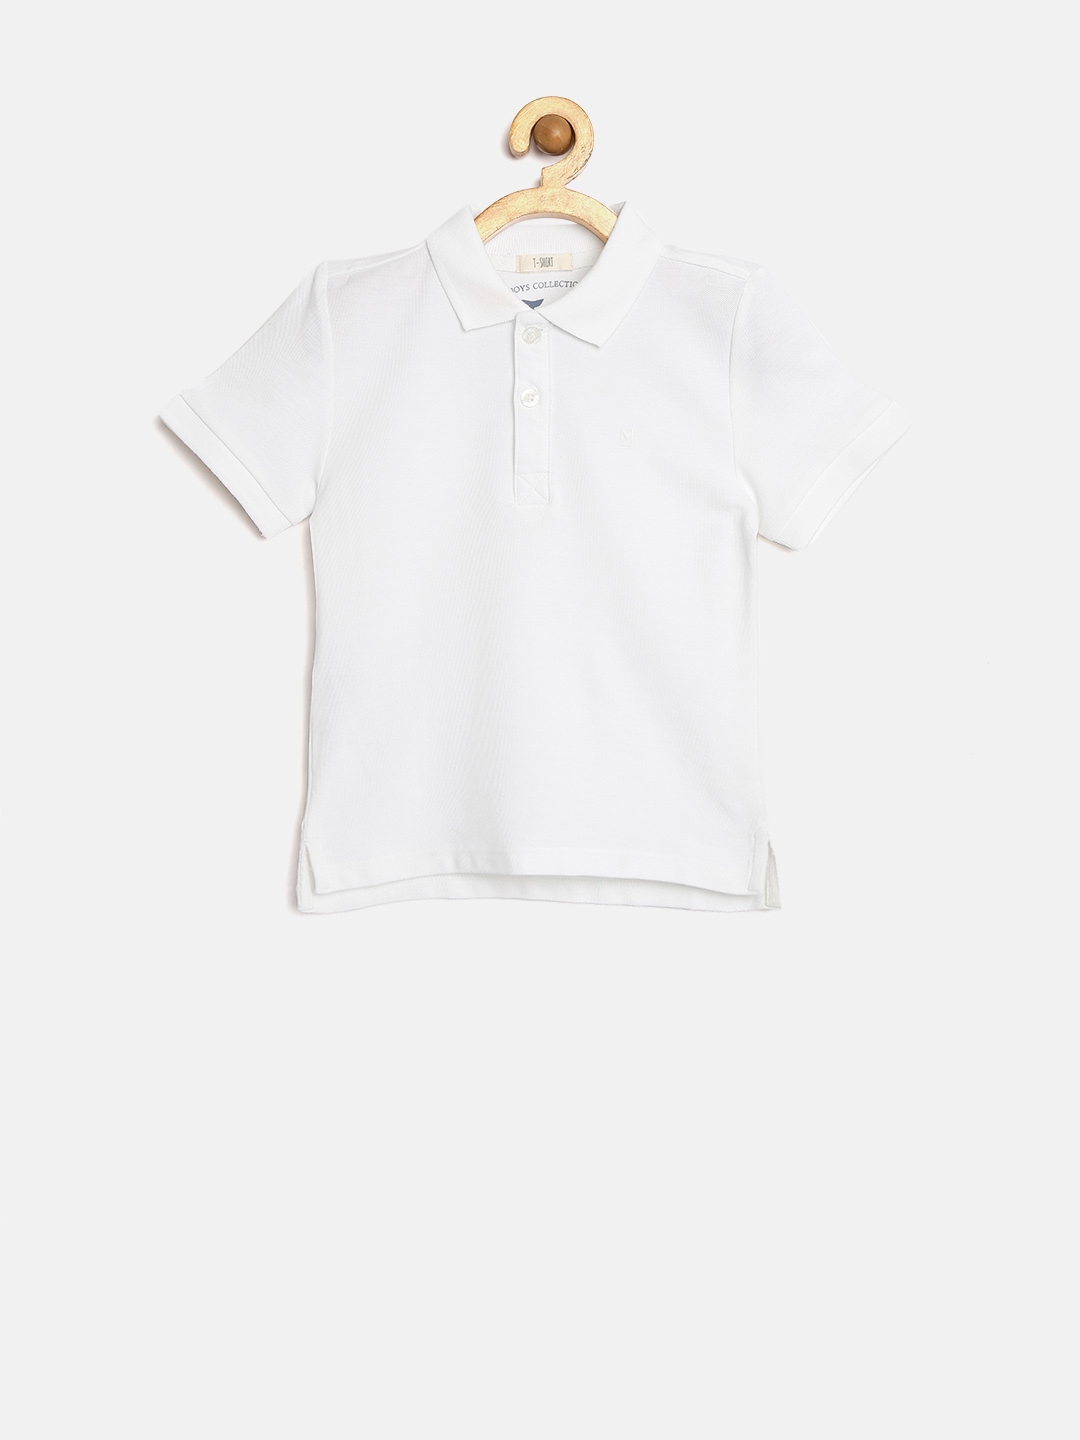 Buy Mango Kids Boys White Polo T Shirt - Tshirts for Boys 1309407 | Myntra